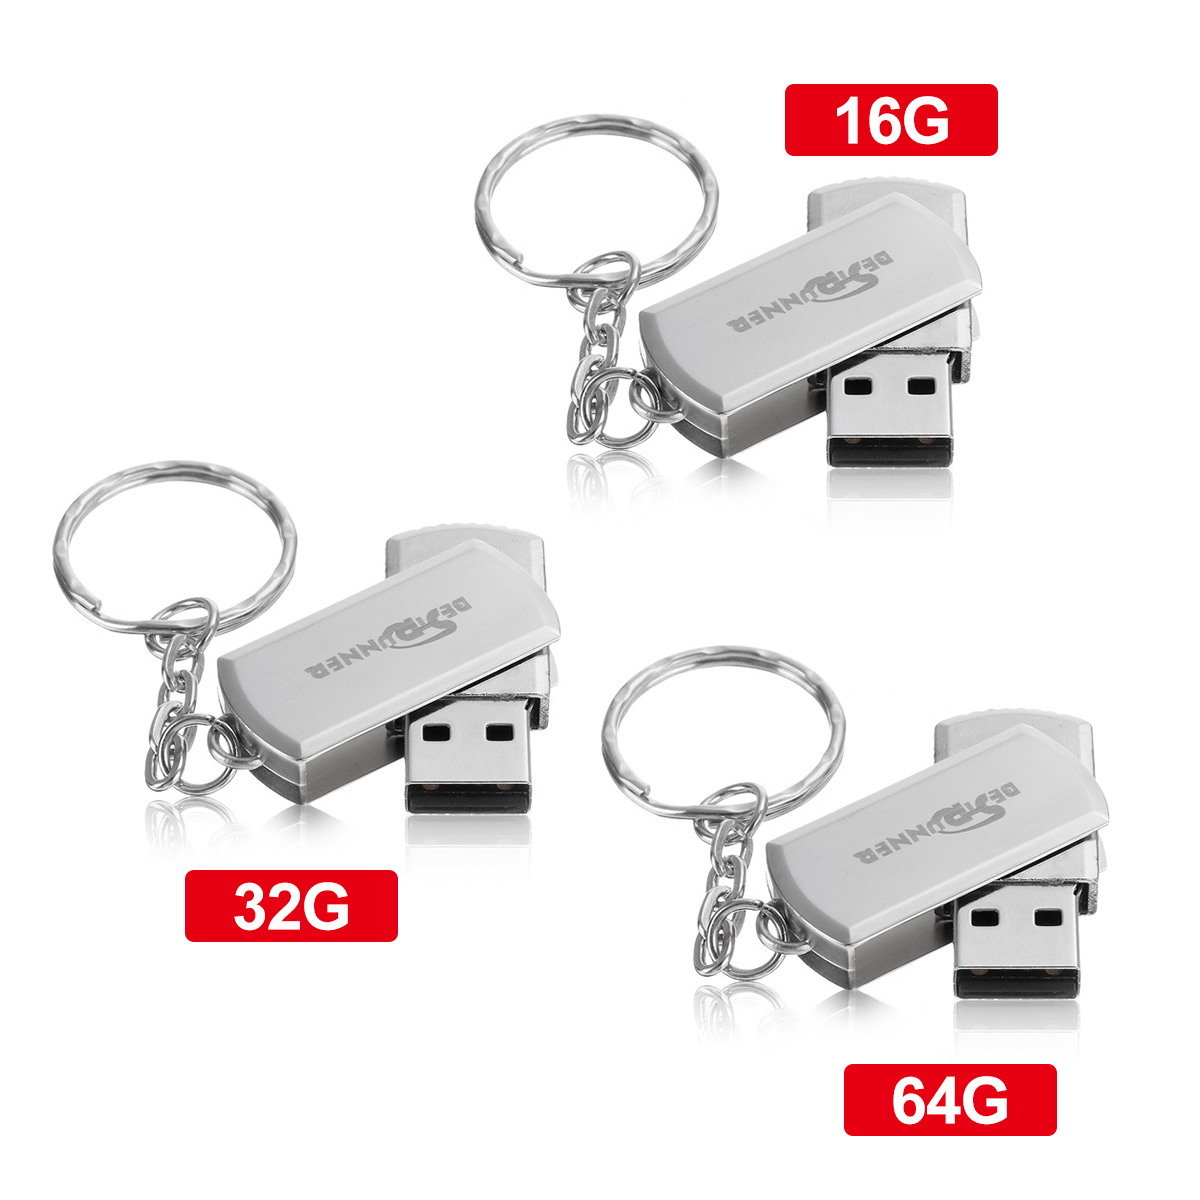 USB Flash Drive USB 2.0 16GB 32GB 64GB 360º Rotation Metal Flash Memory Card USB Stick Pen Drive U Disk